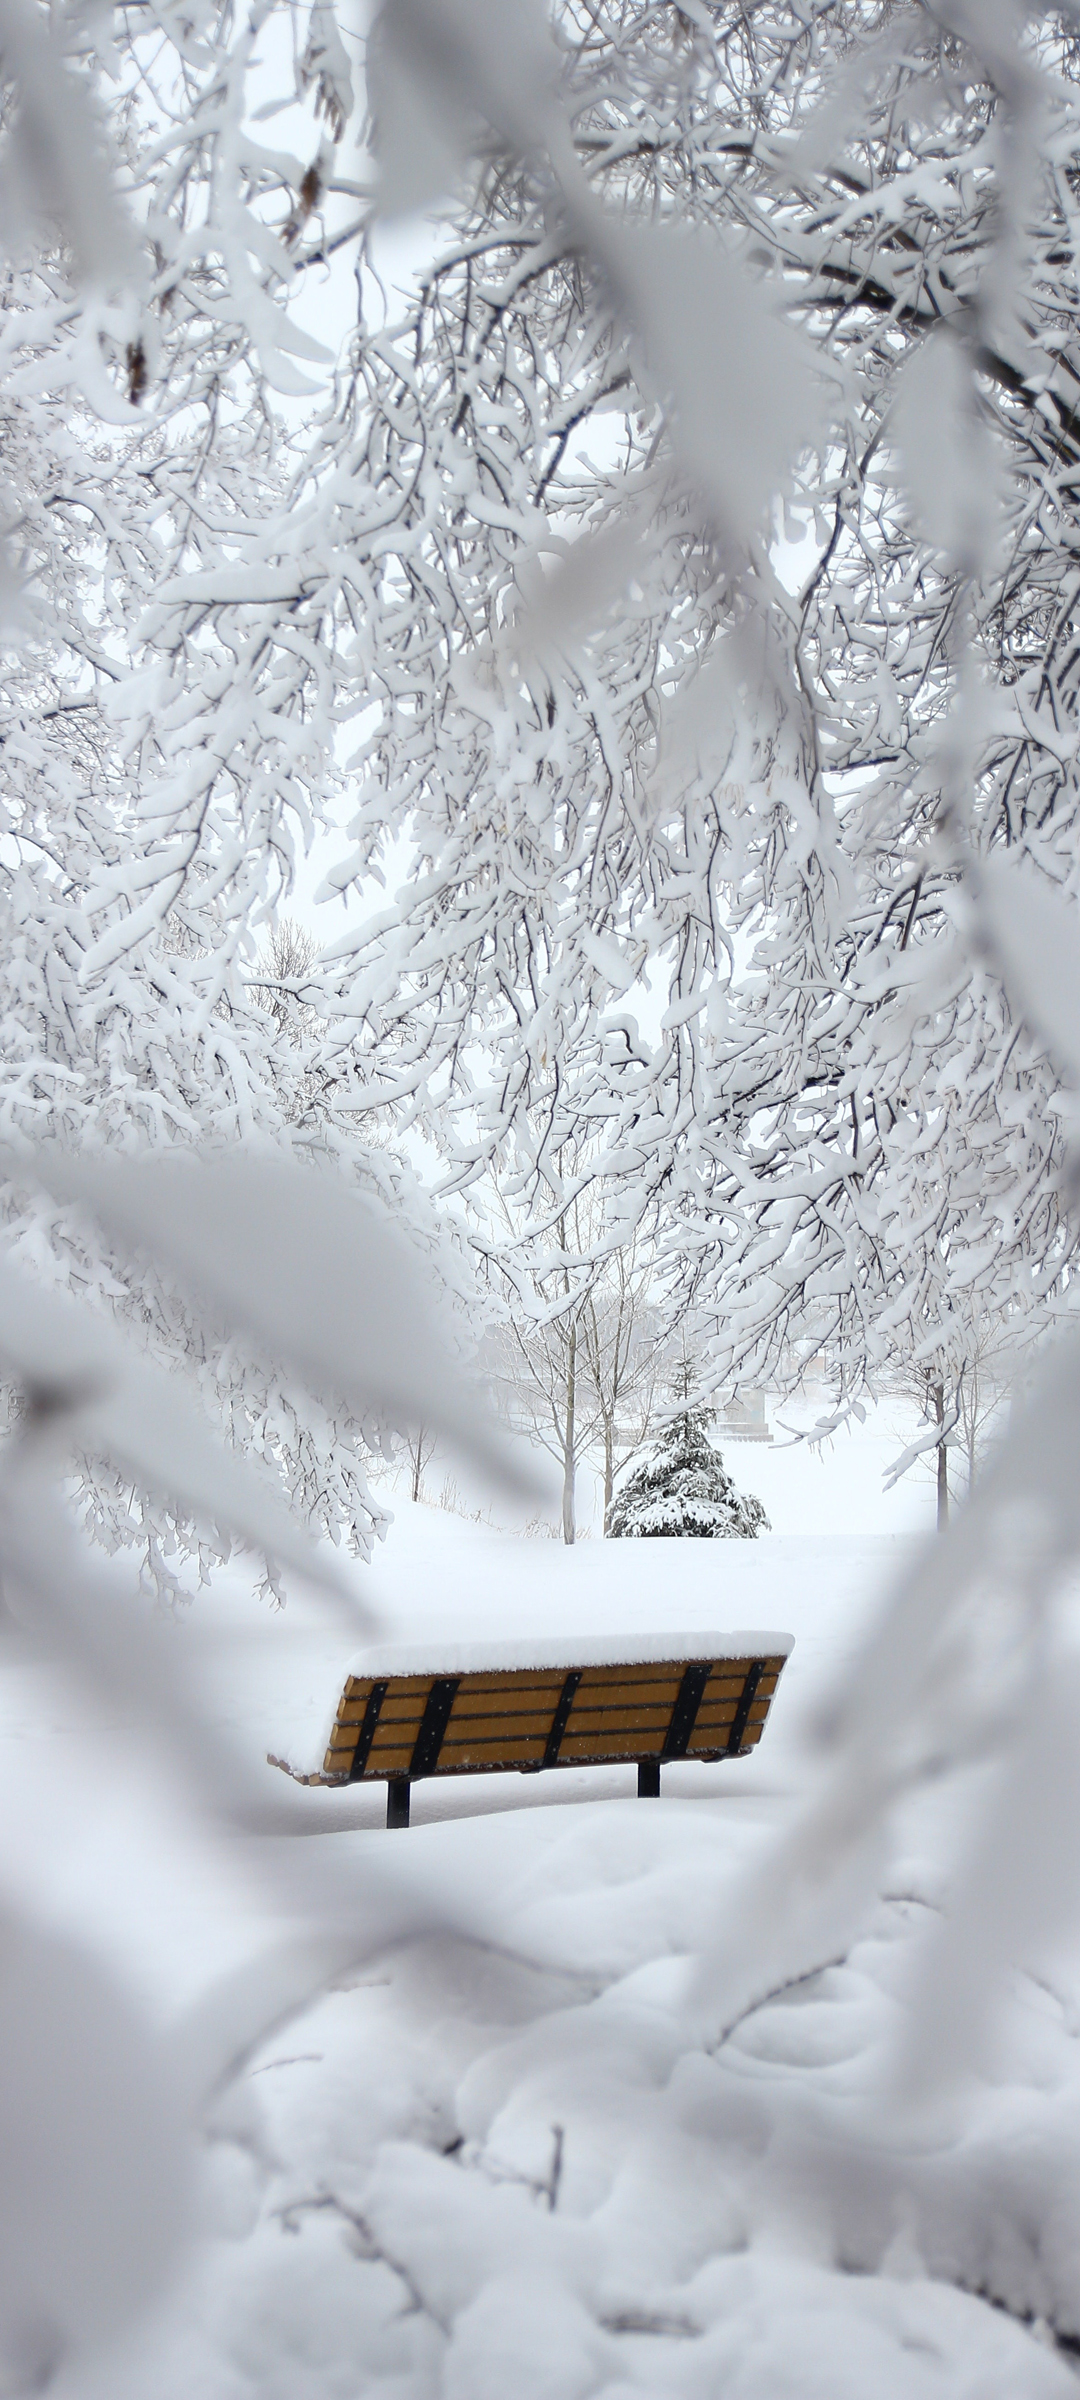 冬季 厚厚的大雪 银装素裹 风景高清手机壁纸